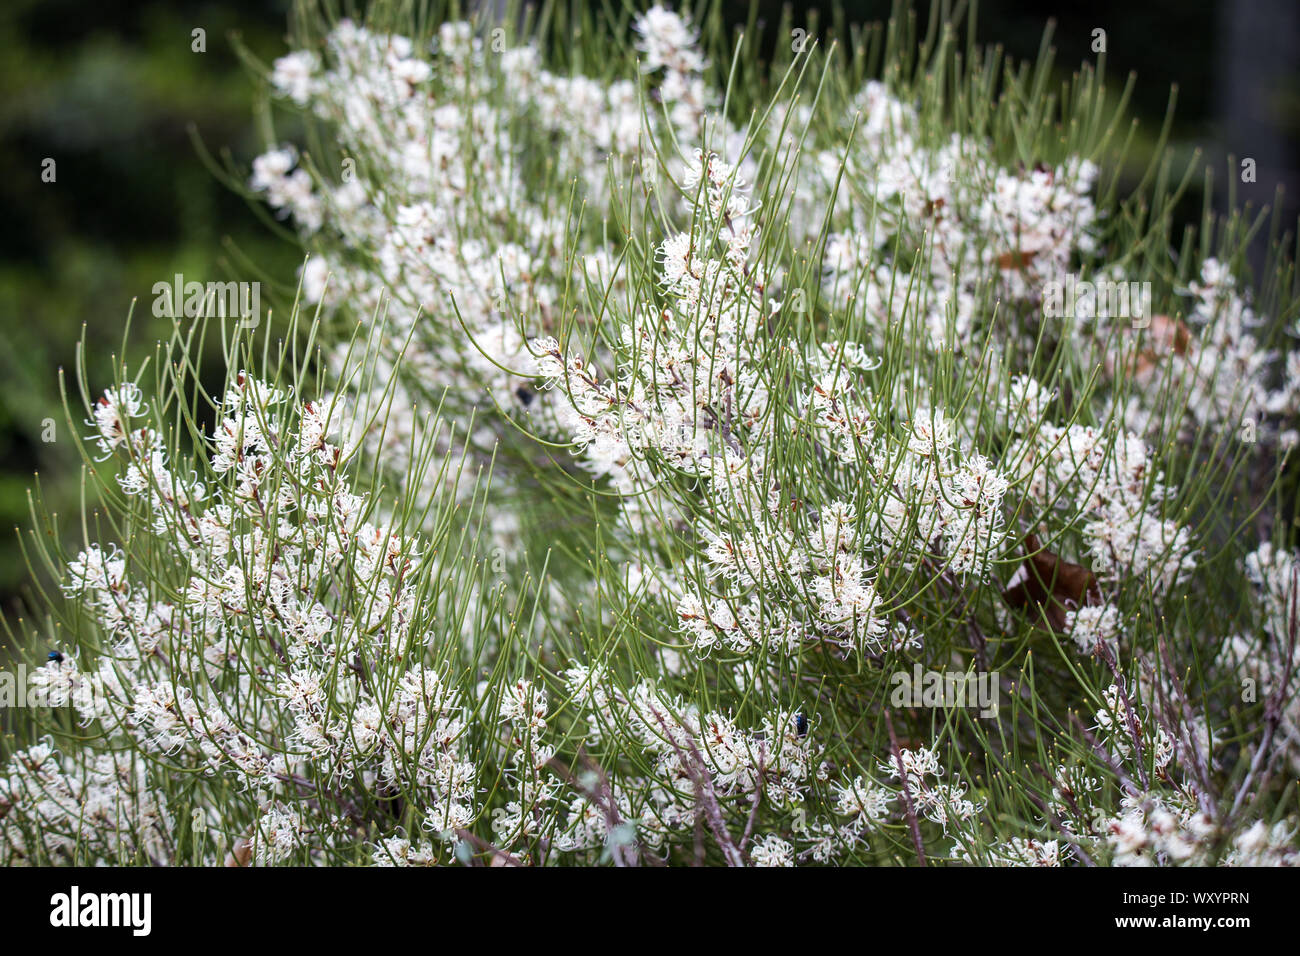 La Hakea Prostrata è un basso arbusto nativo di Australia Occidentale e fiori profusamente in primavera con fiori di colore bianco Foto Stock